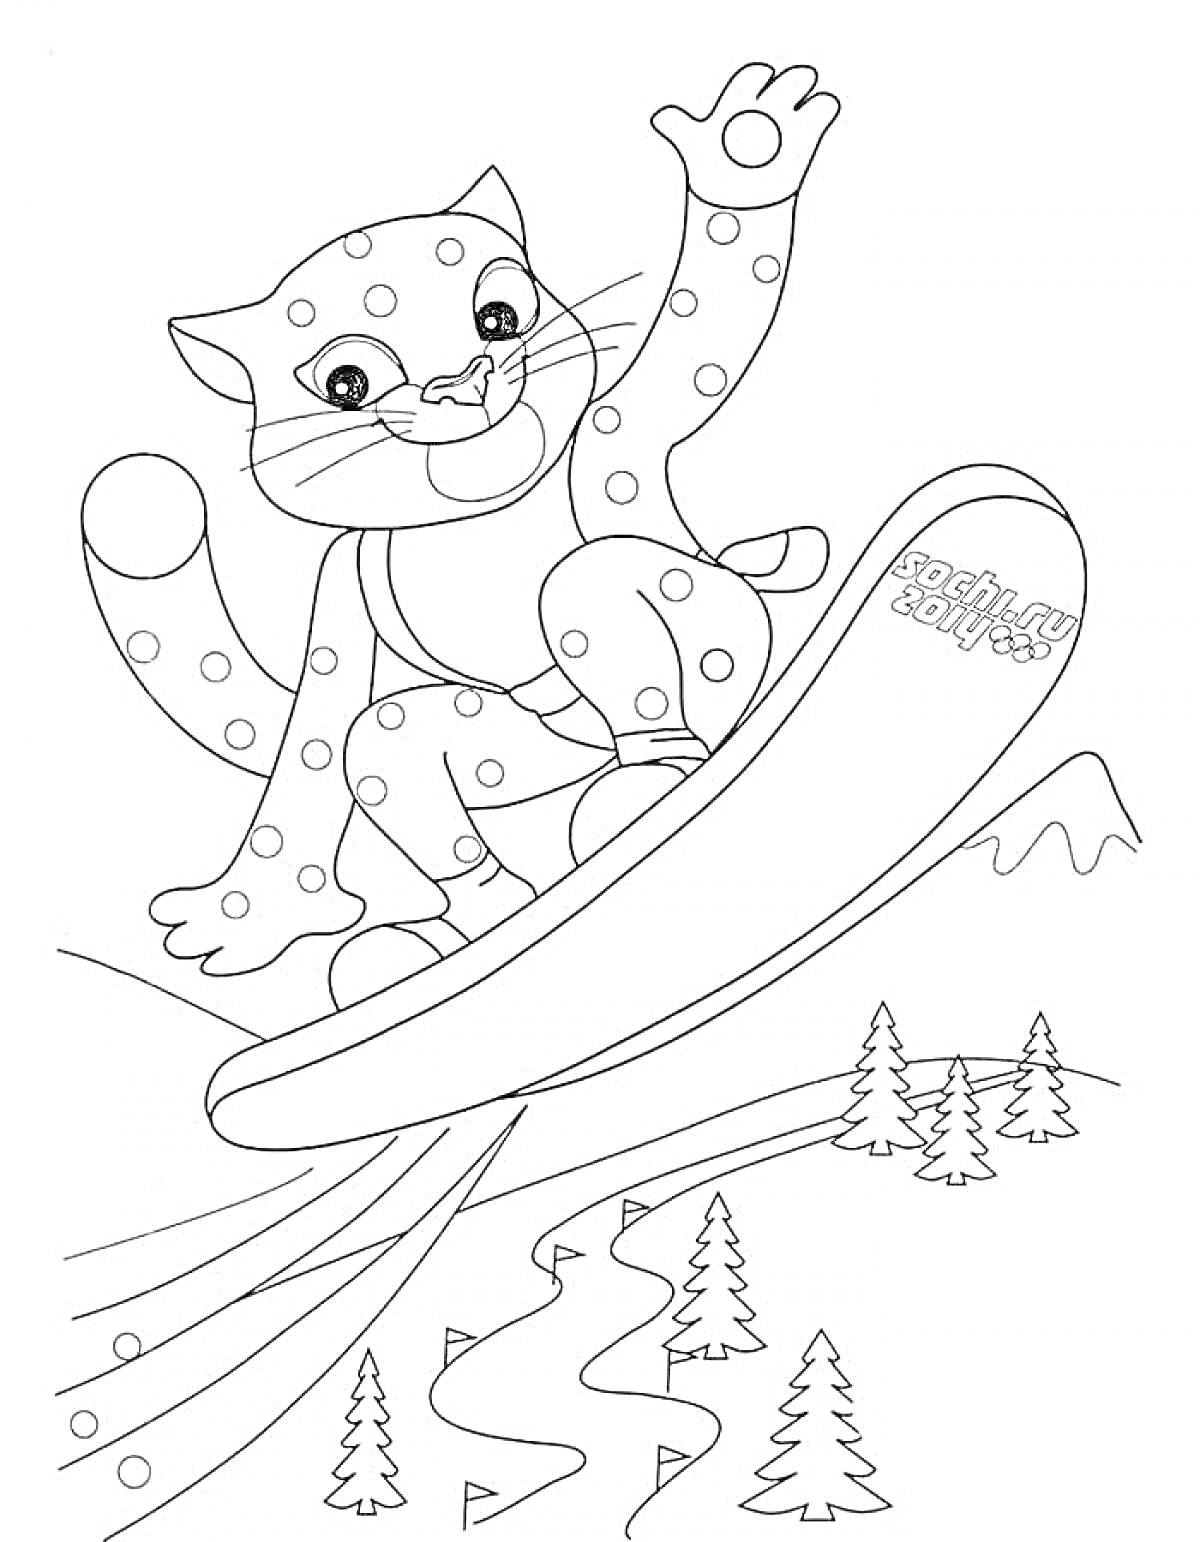 РаскраскаСнежный барс на сноуборде, деревья, горы